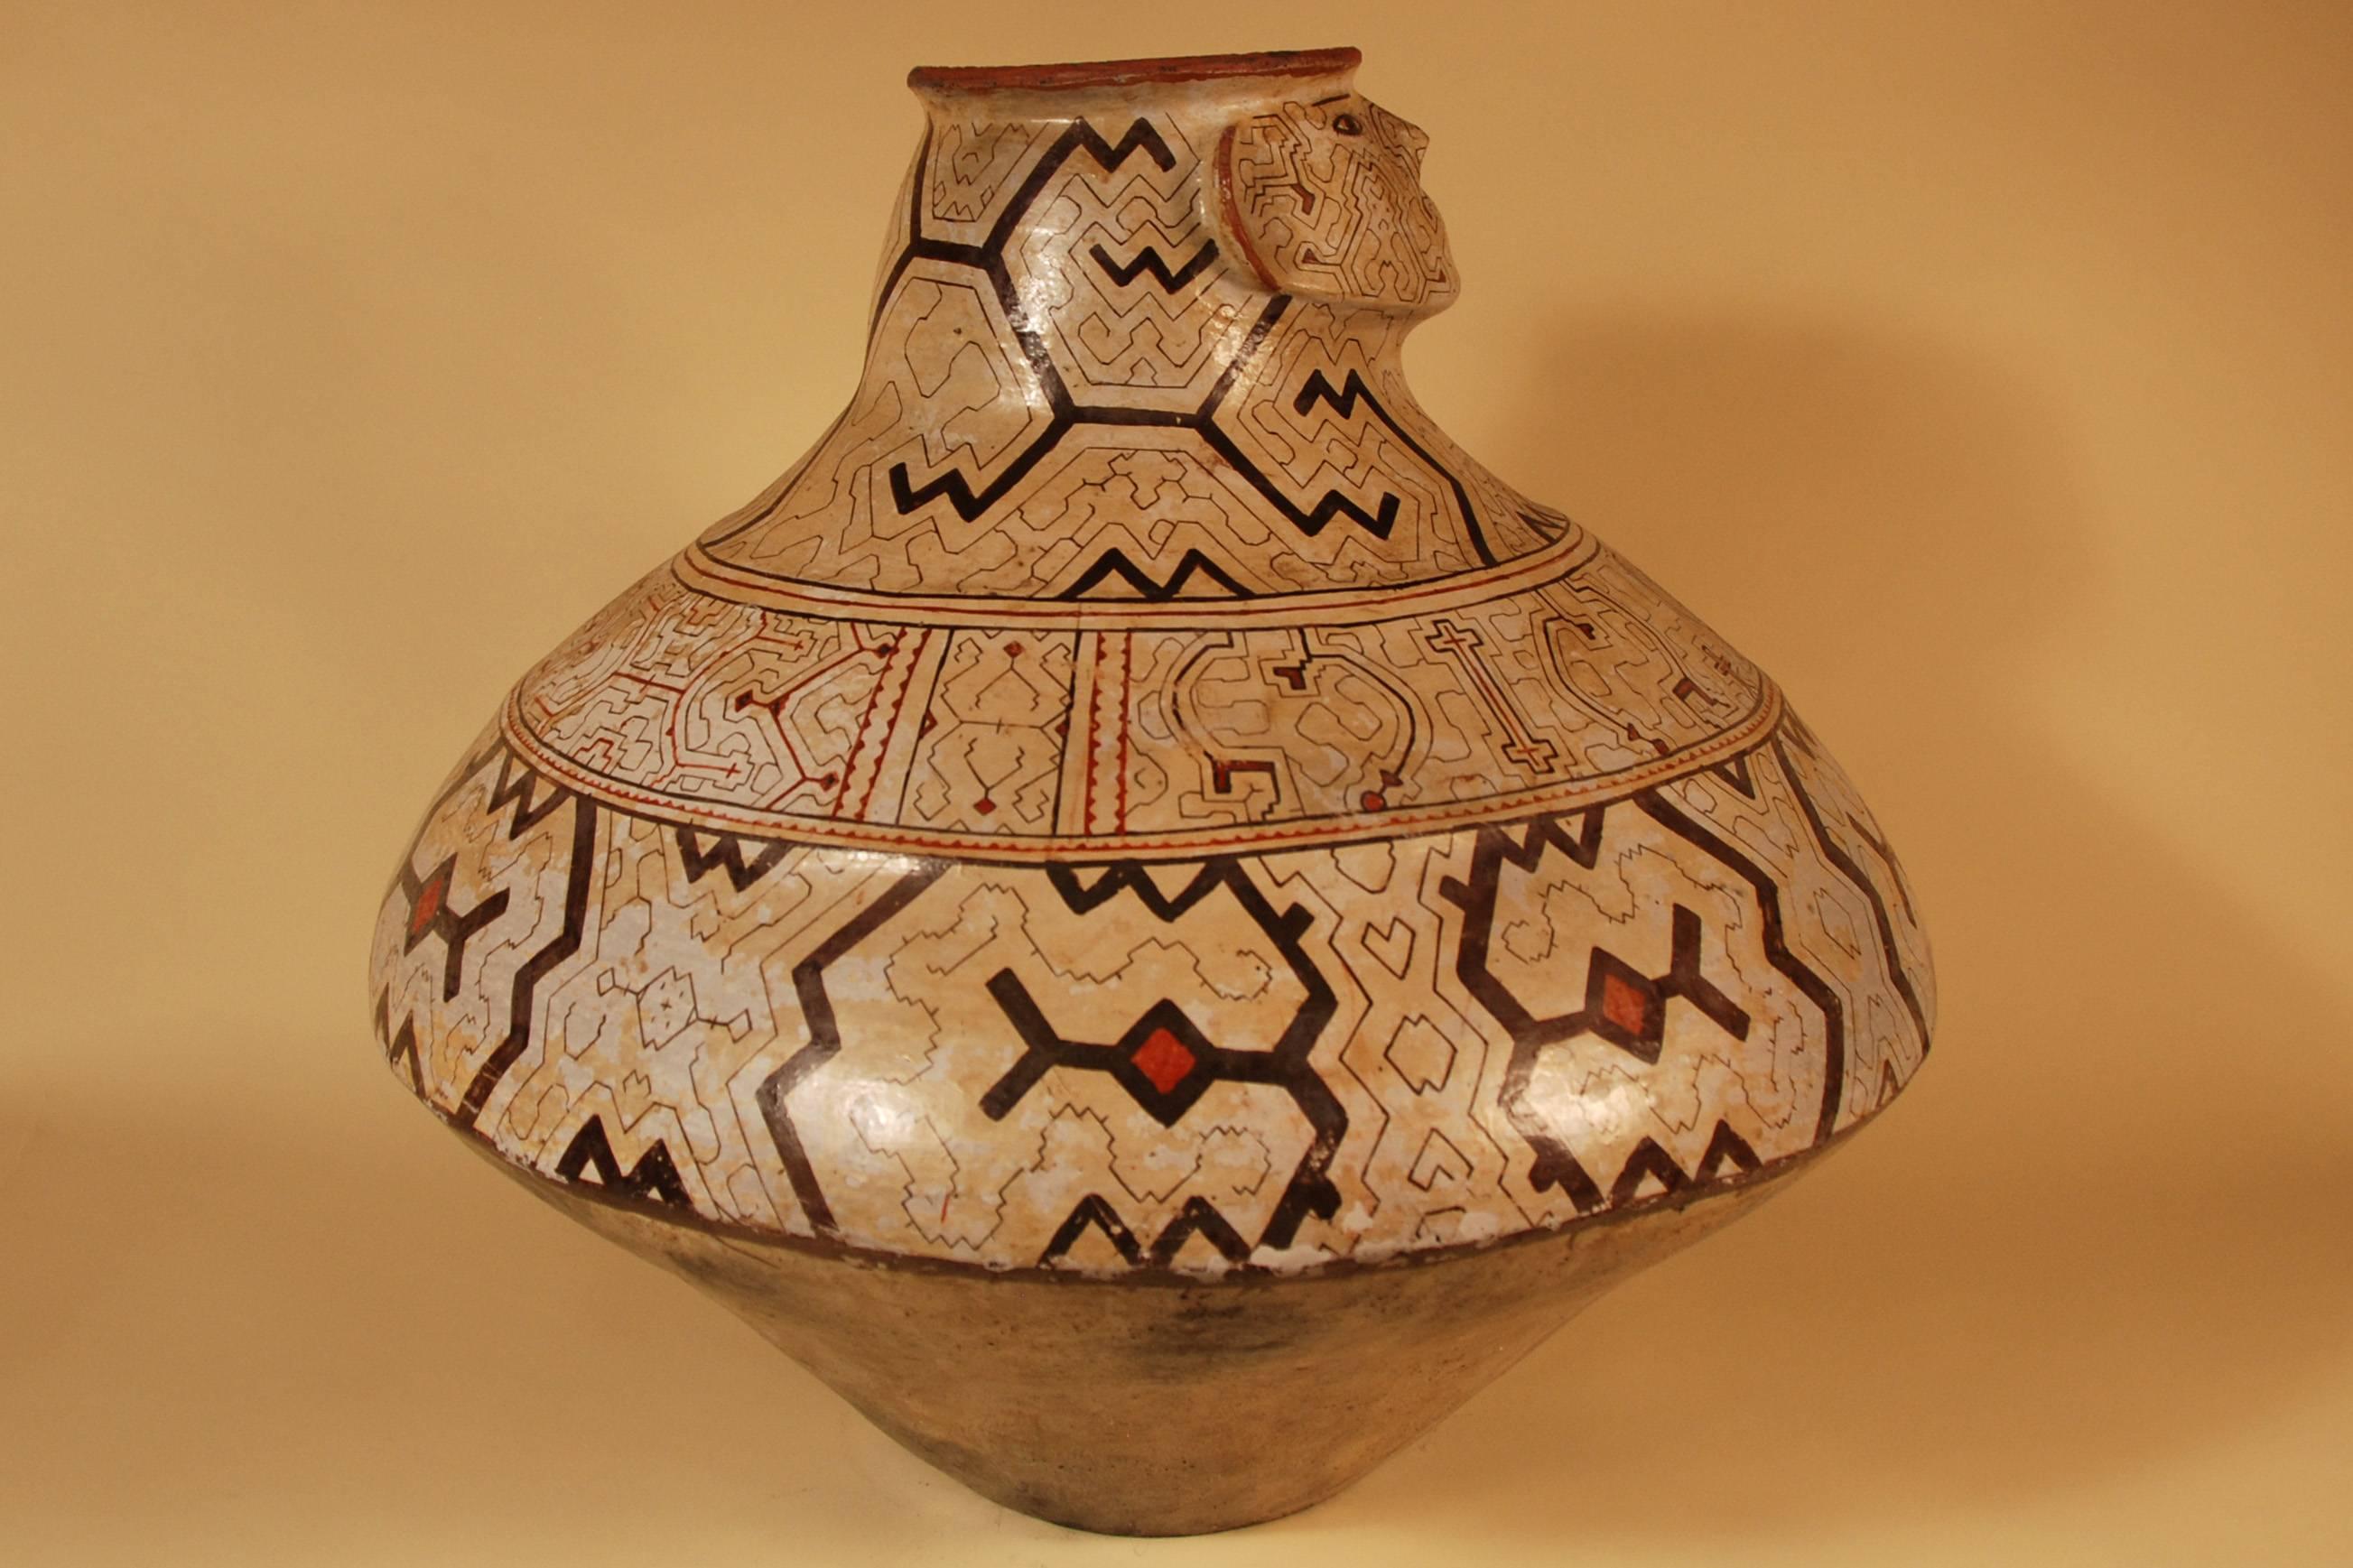 Peruvian Mid-20th Century Large Tribal Ceramic Unique Pot Shipibo Culture Peru